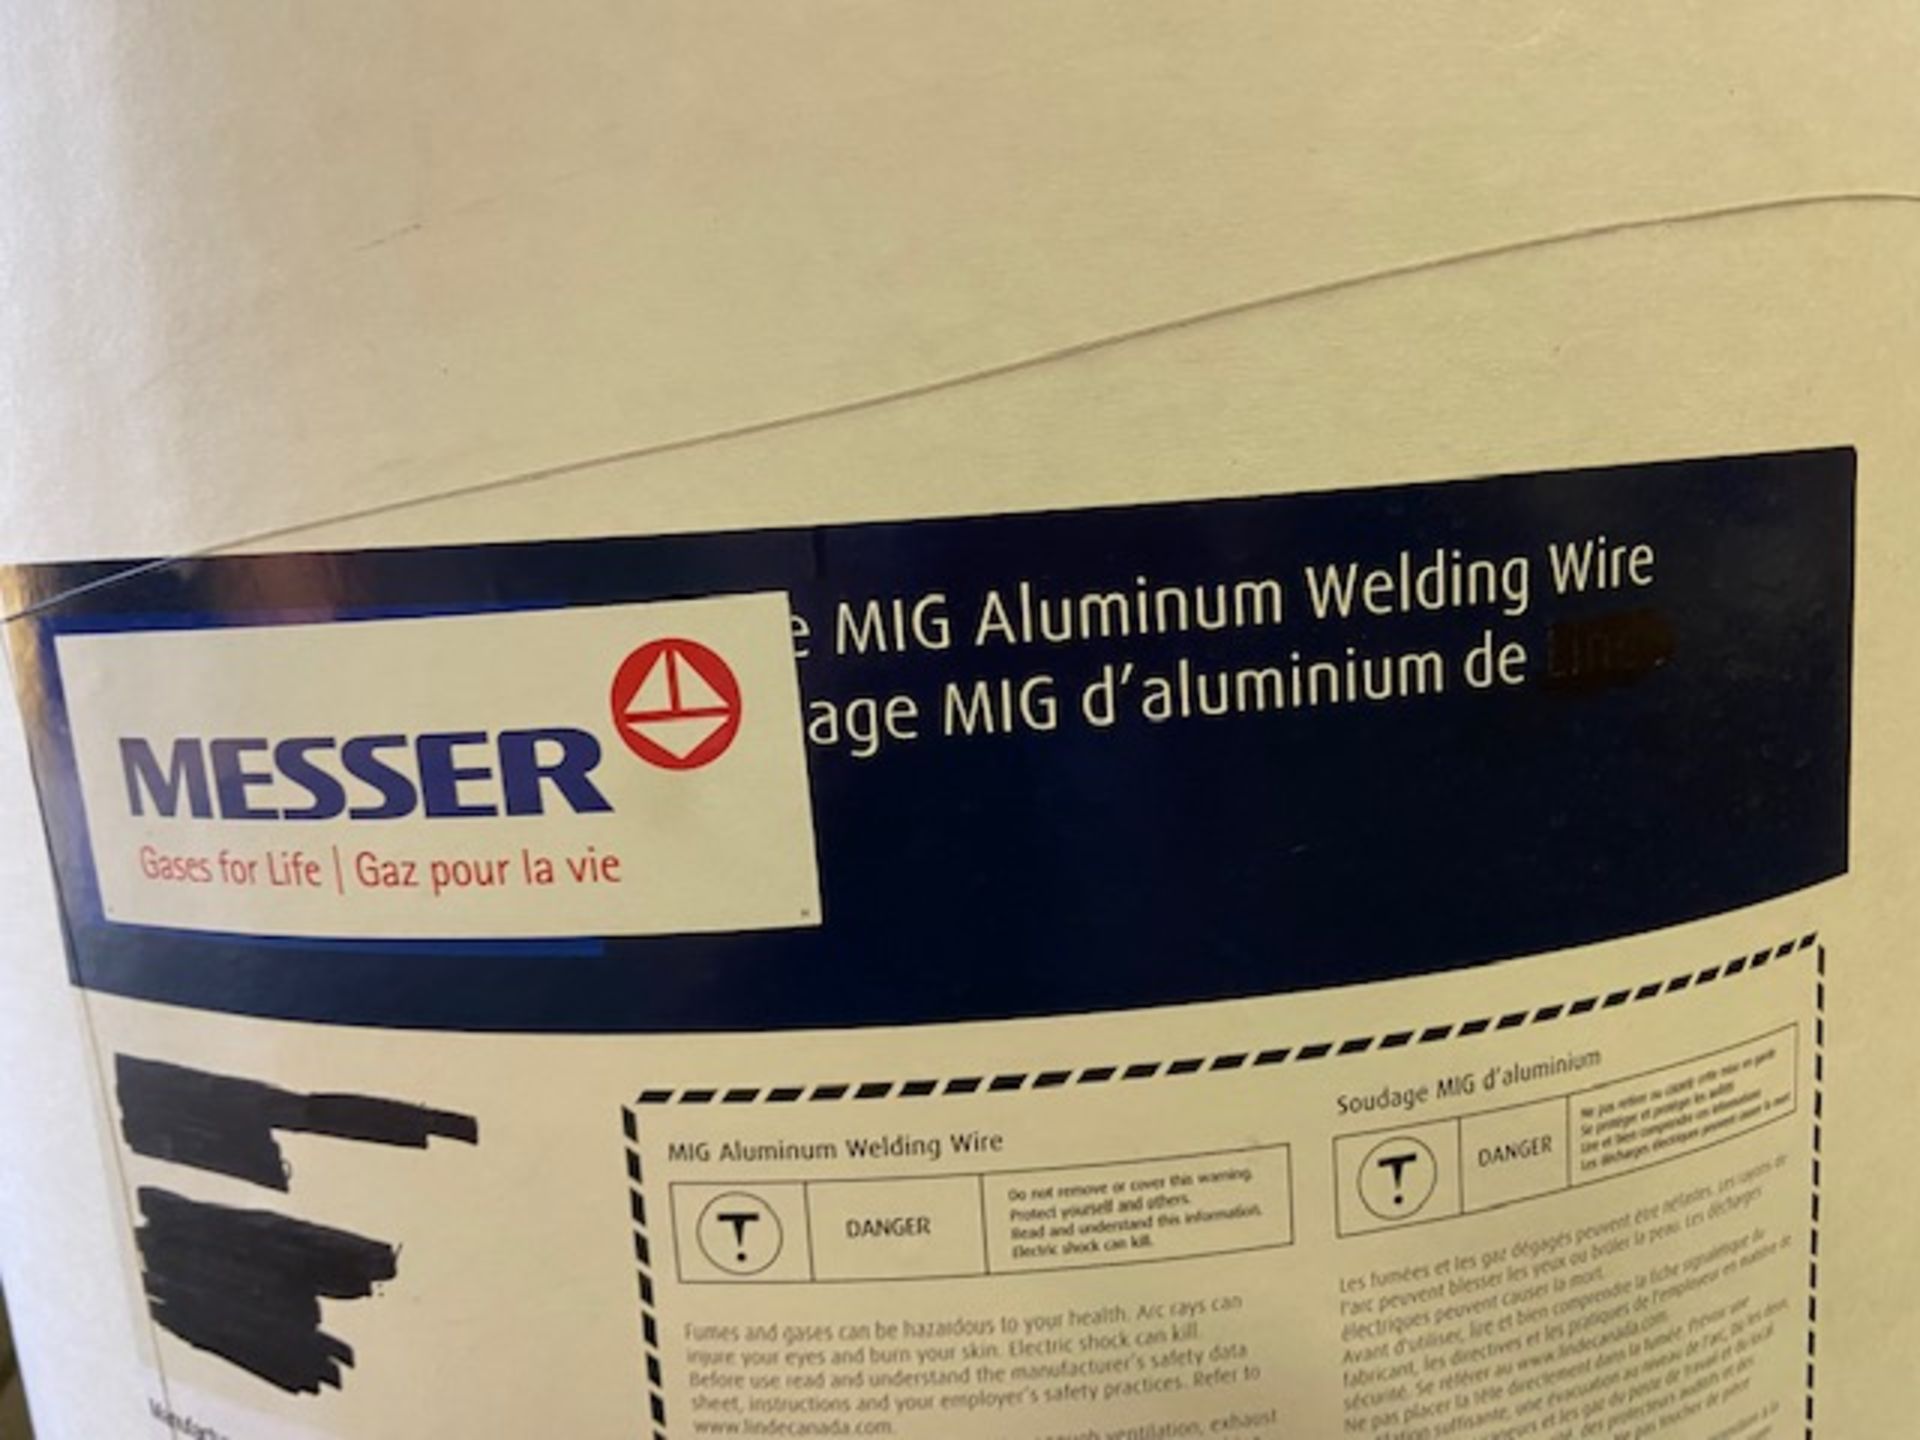 Messer Linde Mig Welding Wire Aluminum DRUM Barrel 150lbs 3/64" ER 3043 - made in Switzerland - Image 2 of 3